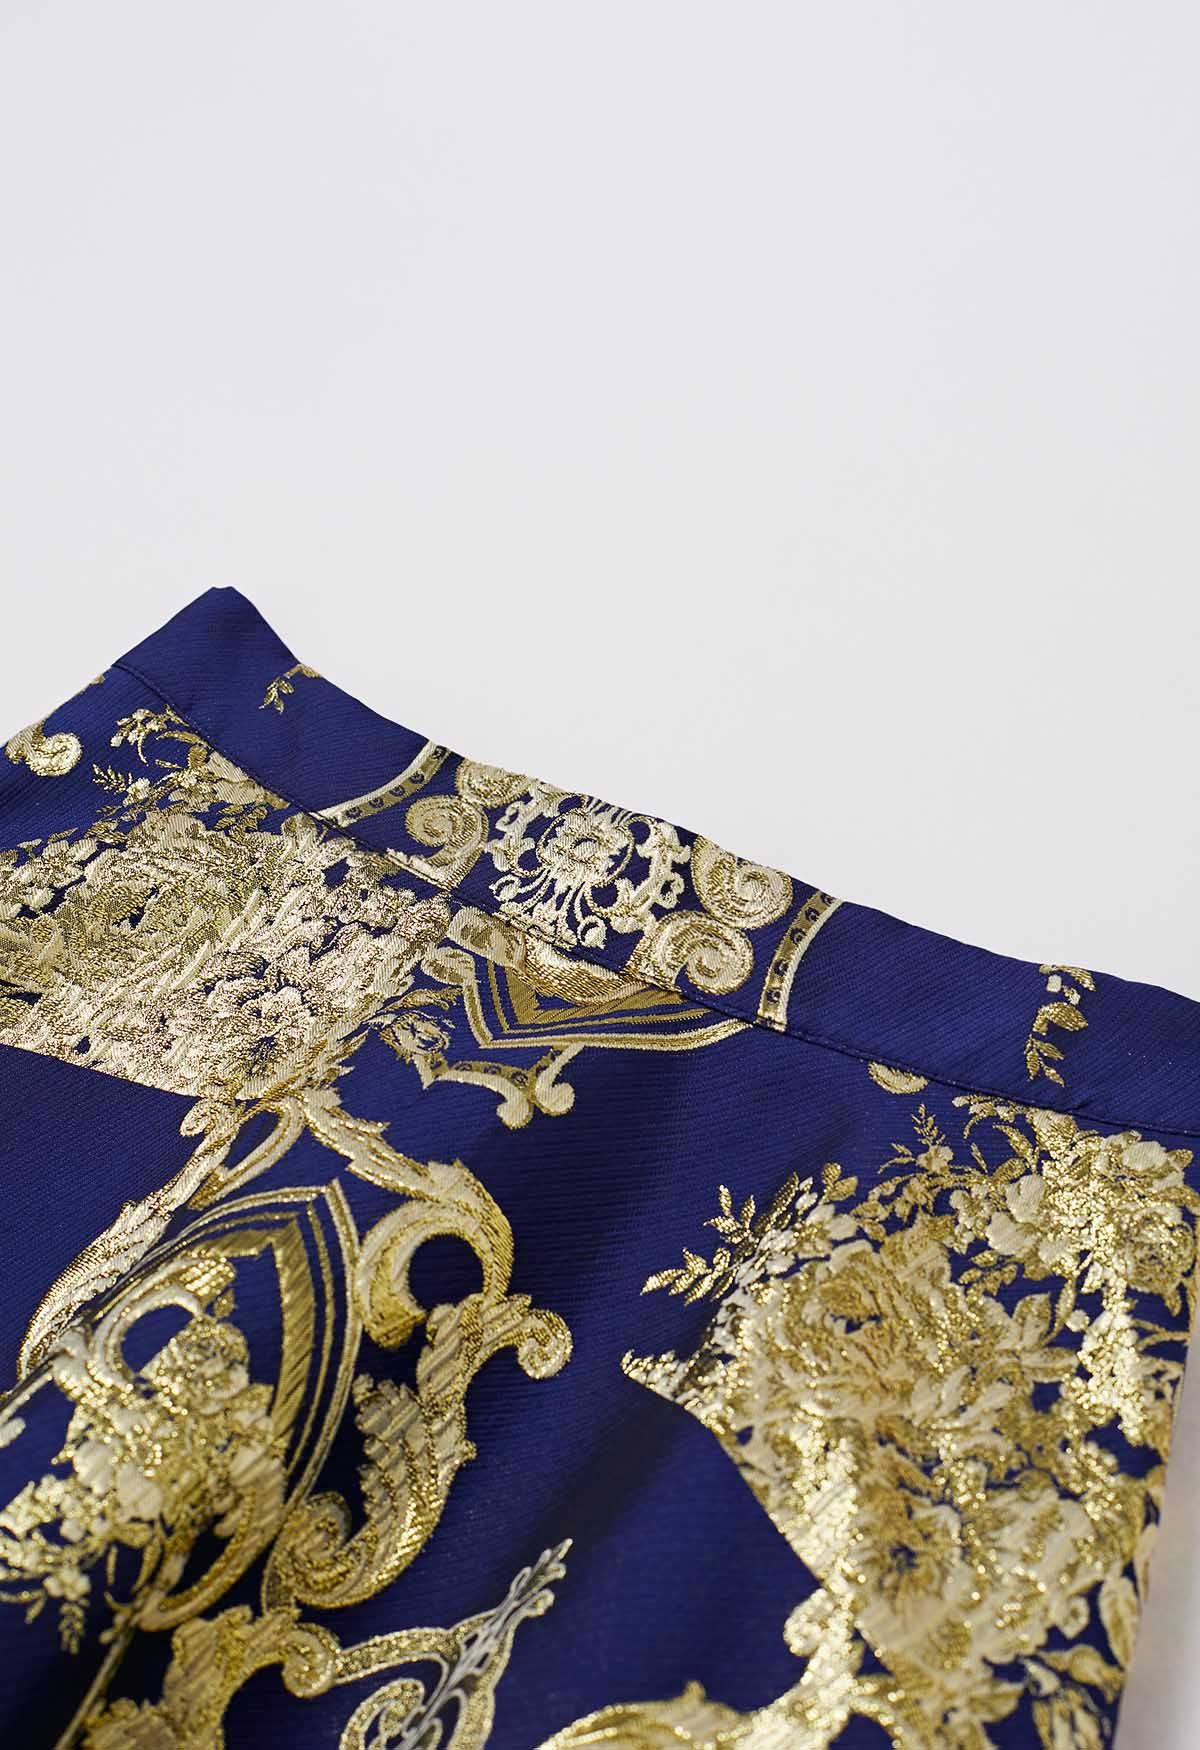 تنورة طويلة من قماش الجاكار الباروكي بخيط معدني ساحر باللون الأزرق الداكن